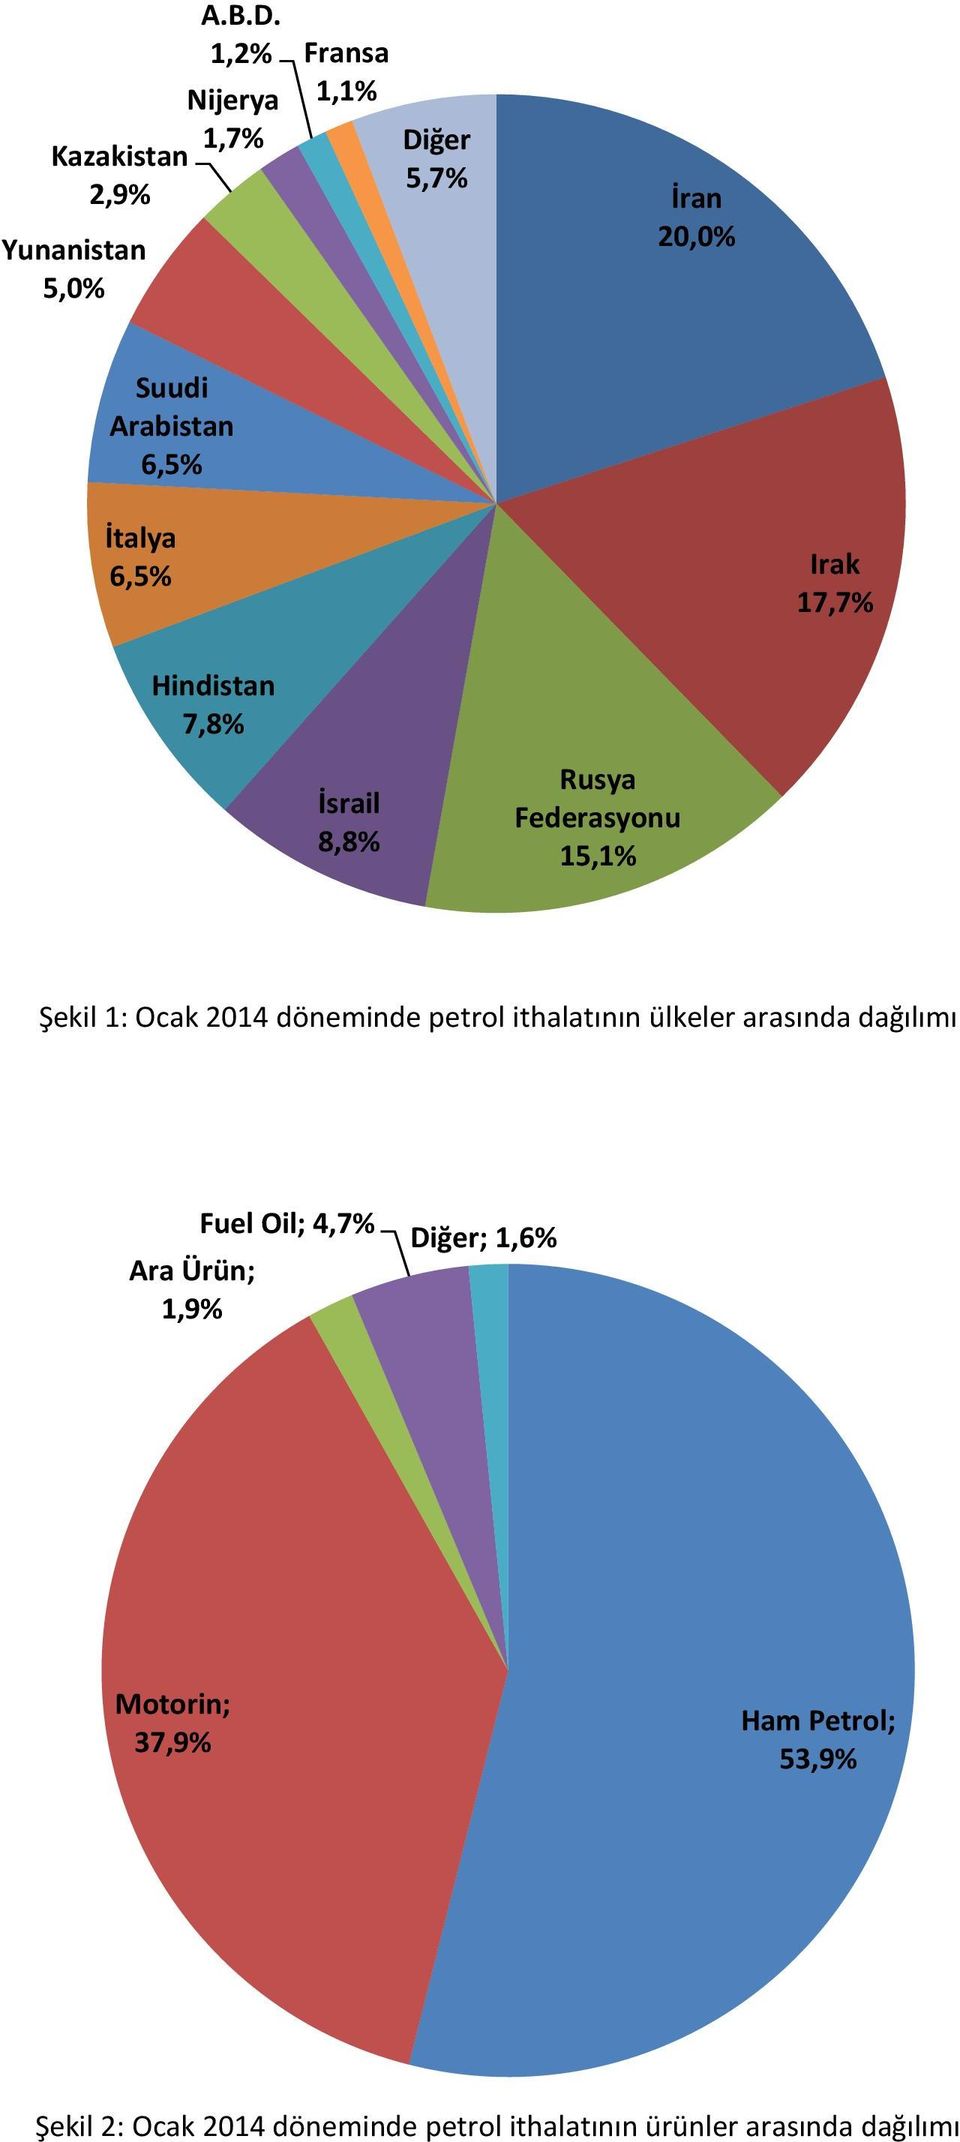 İsrail 8,8% Rusya Federasyonu 15,1% Şekil 1: Ocak 2014 döneminde petrol ithalatının ülkeler arasında